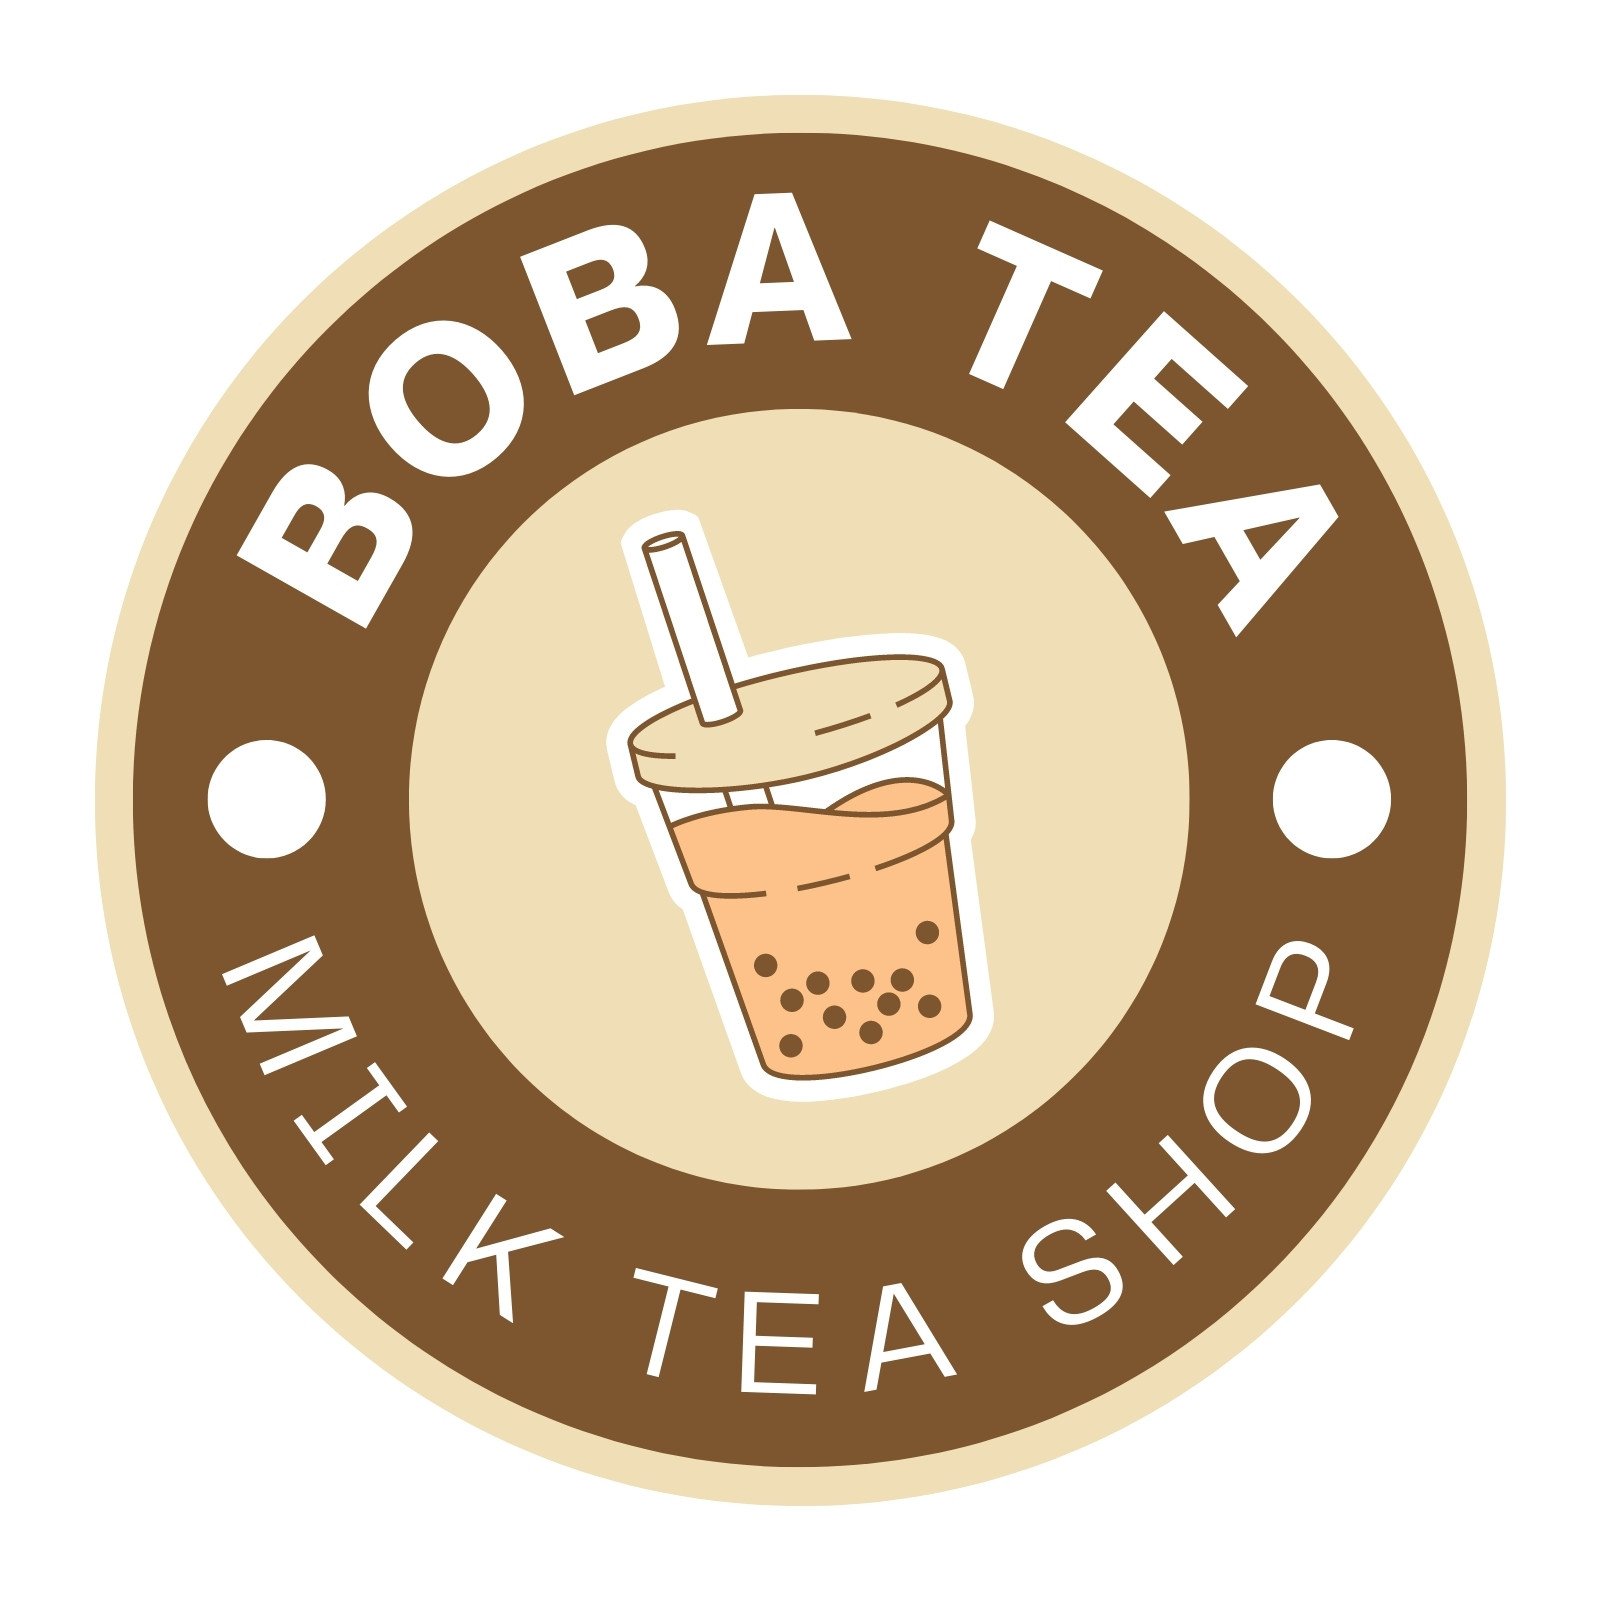 Tea Shop Logo PNG Transparent Images Free Download | Vector Files | Pngtree